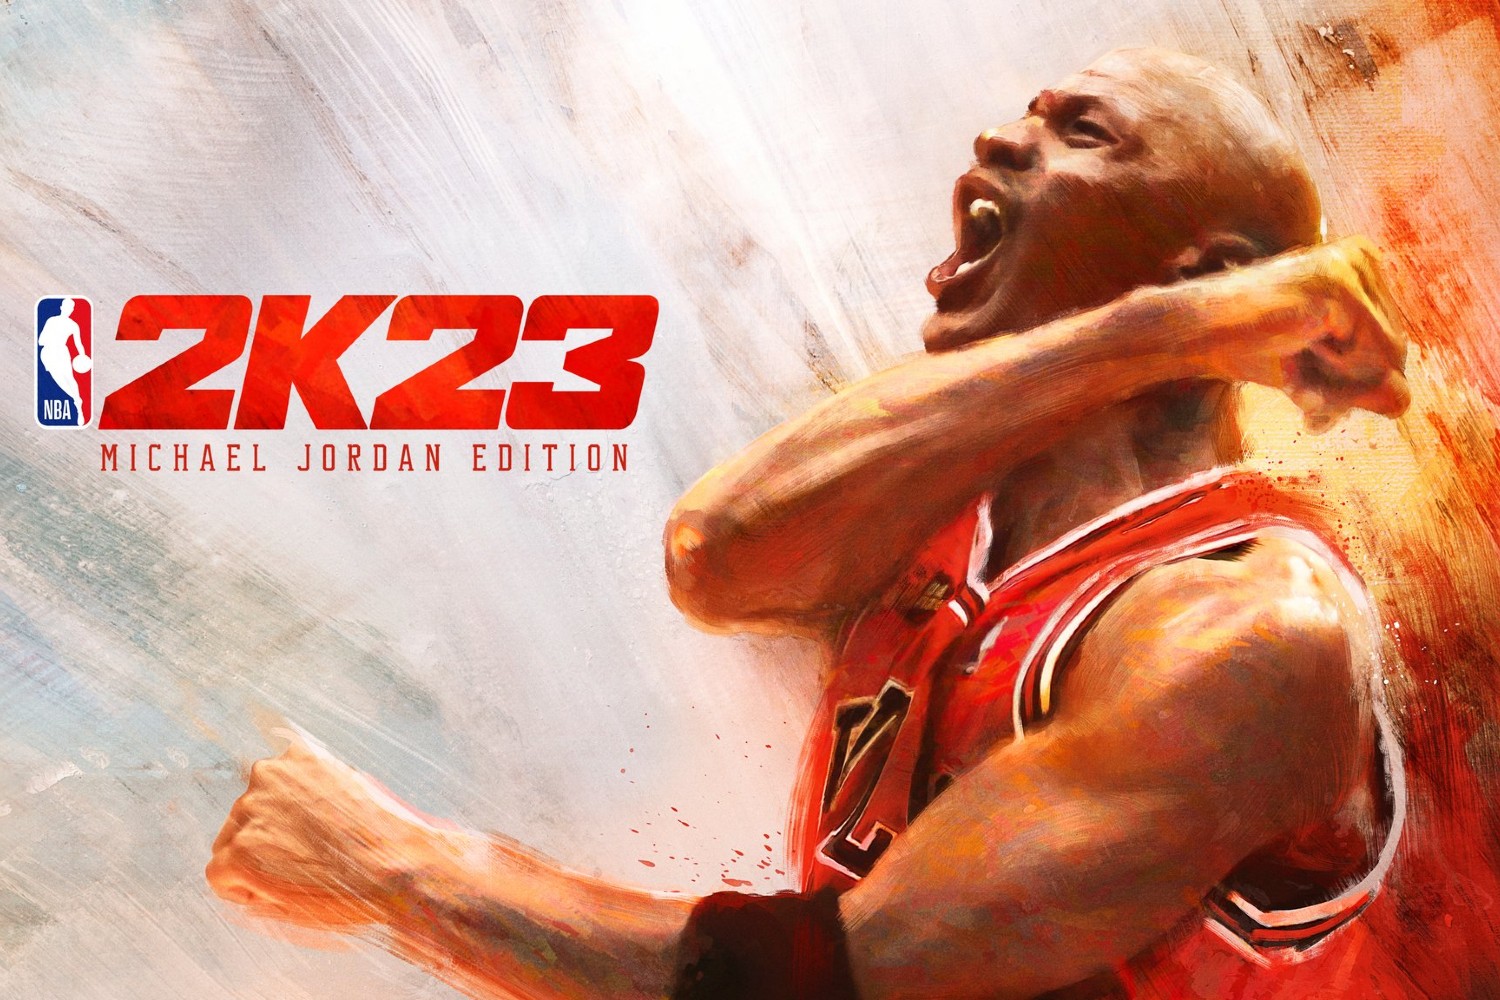 Michael Jordan crowned cover athlete for NBA 2K23 Digital Trends